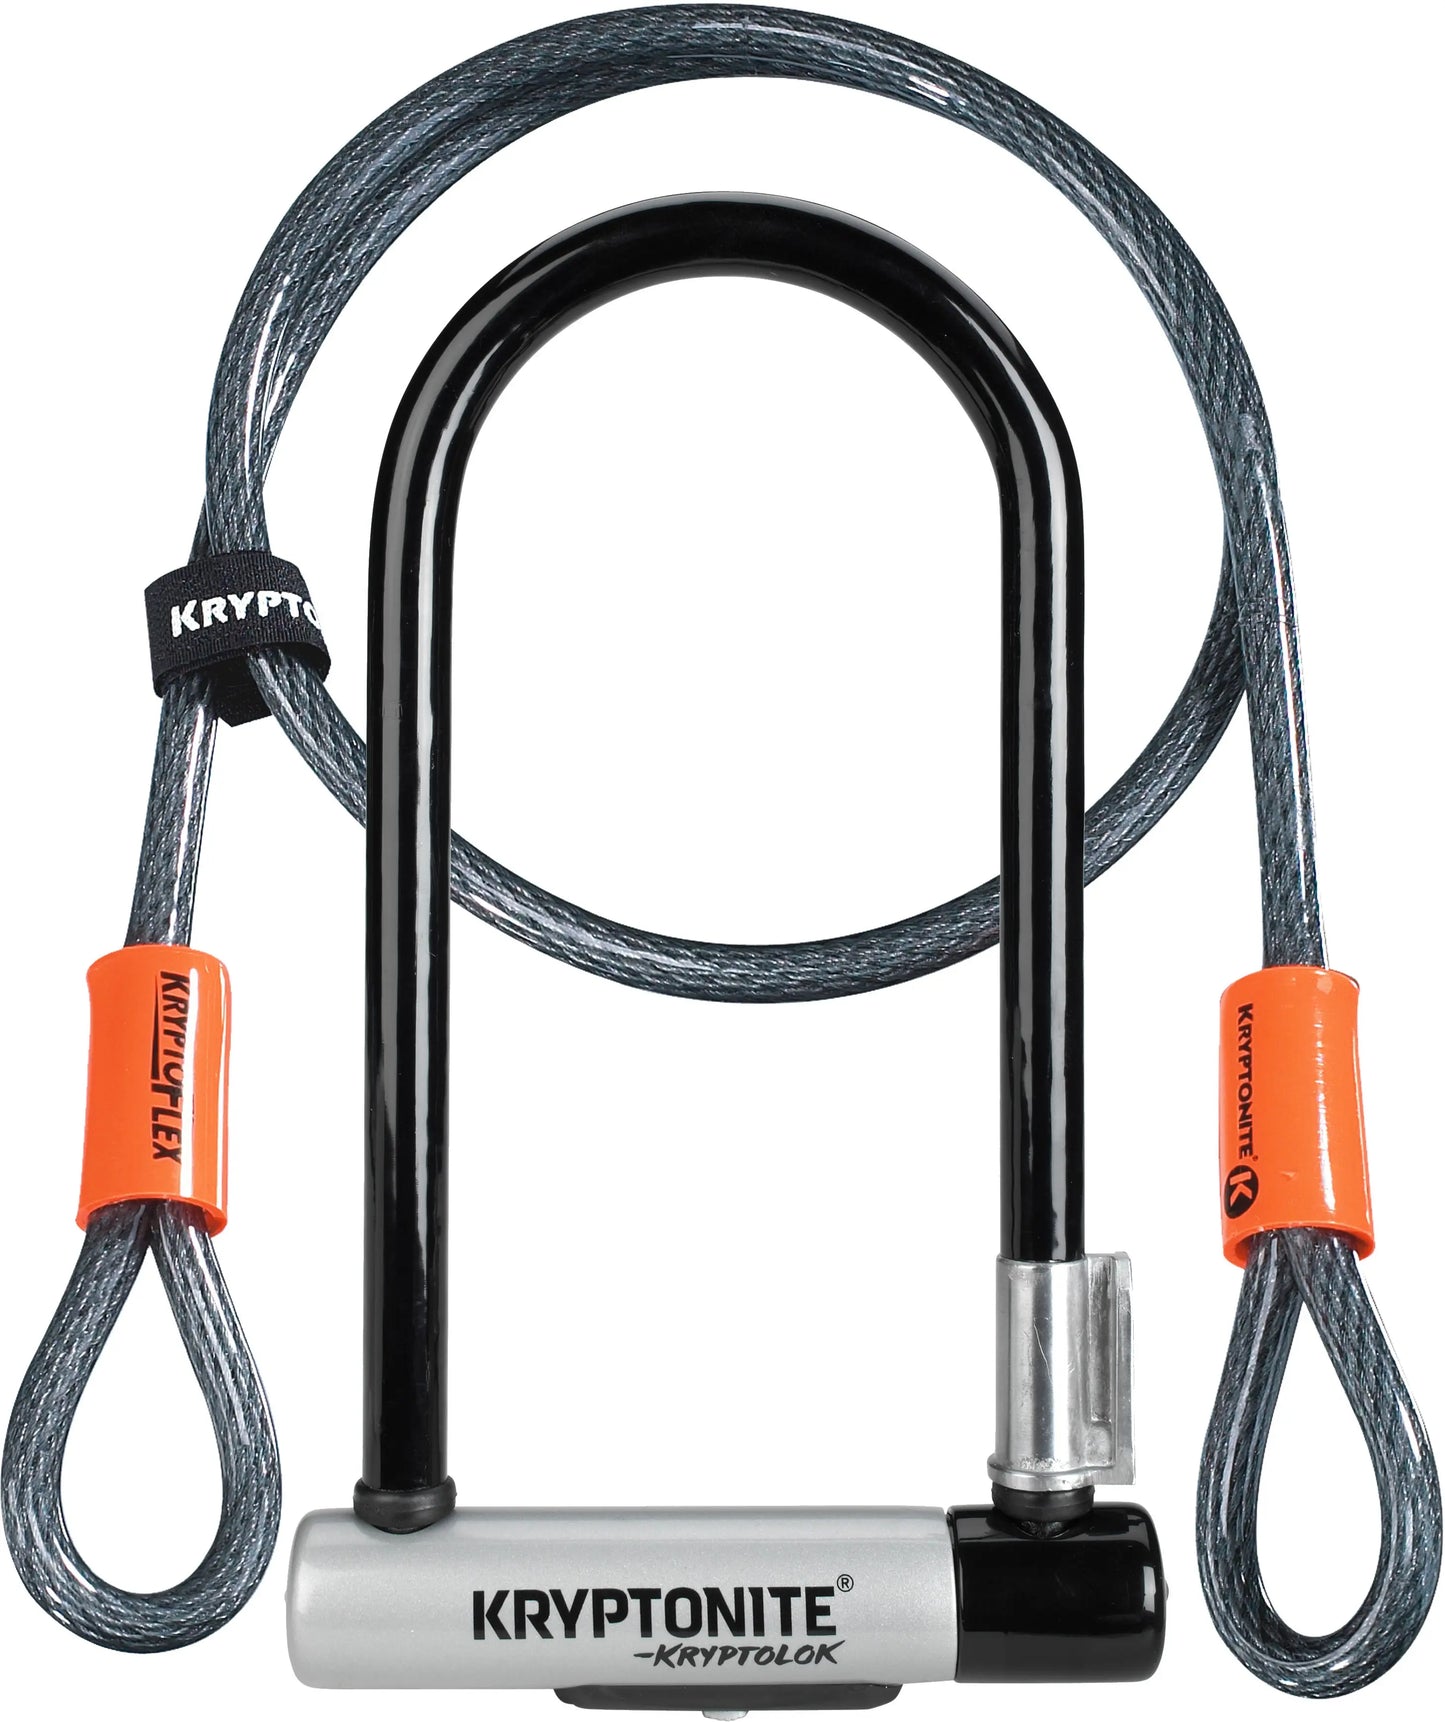 Kryptolok  U-Lock with 4 foot Kryptoflex cable